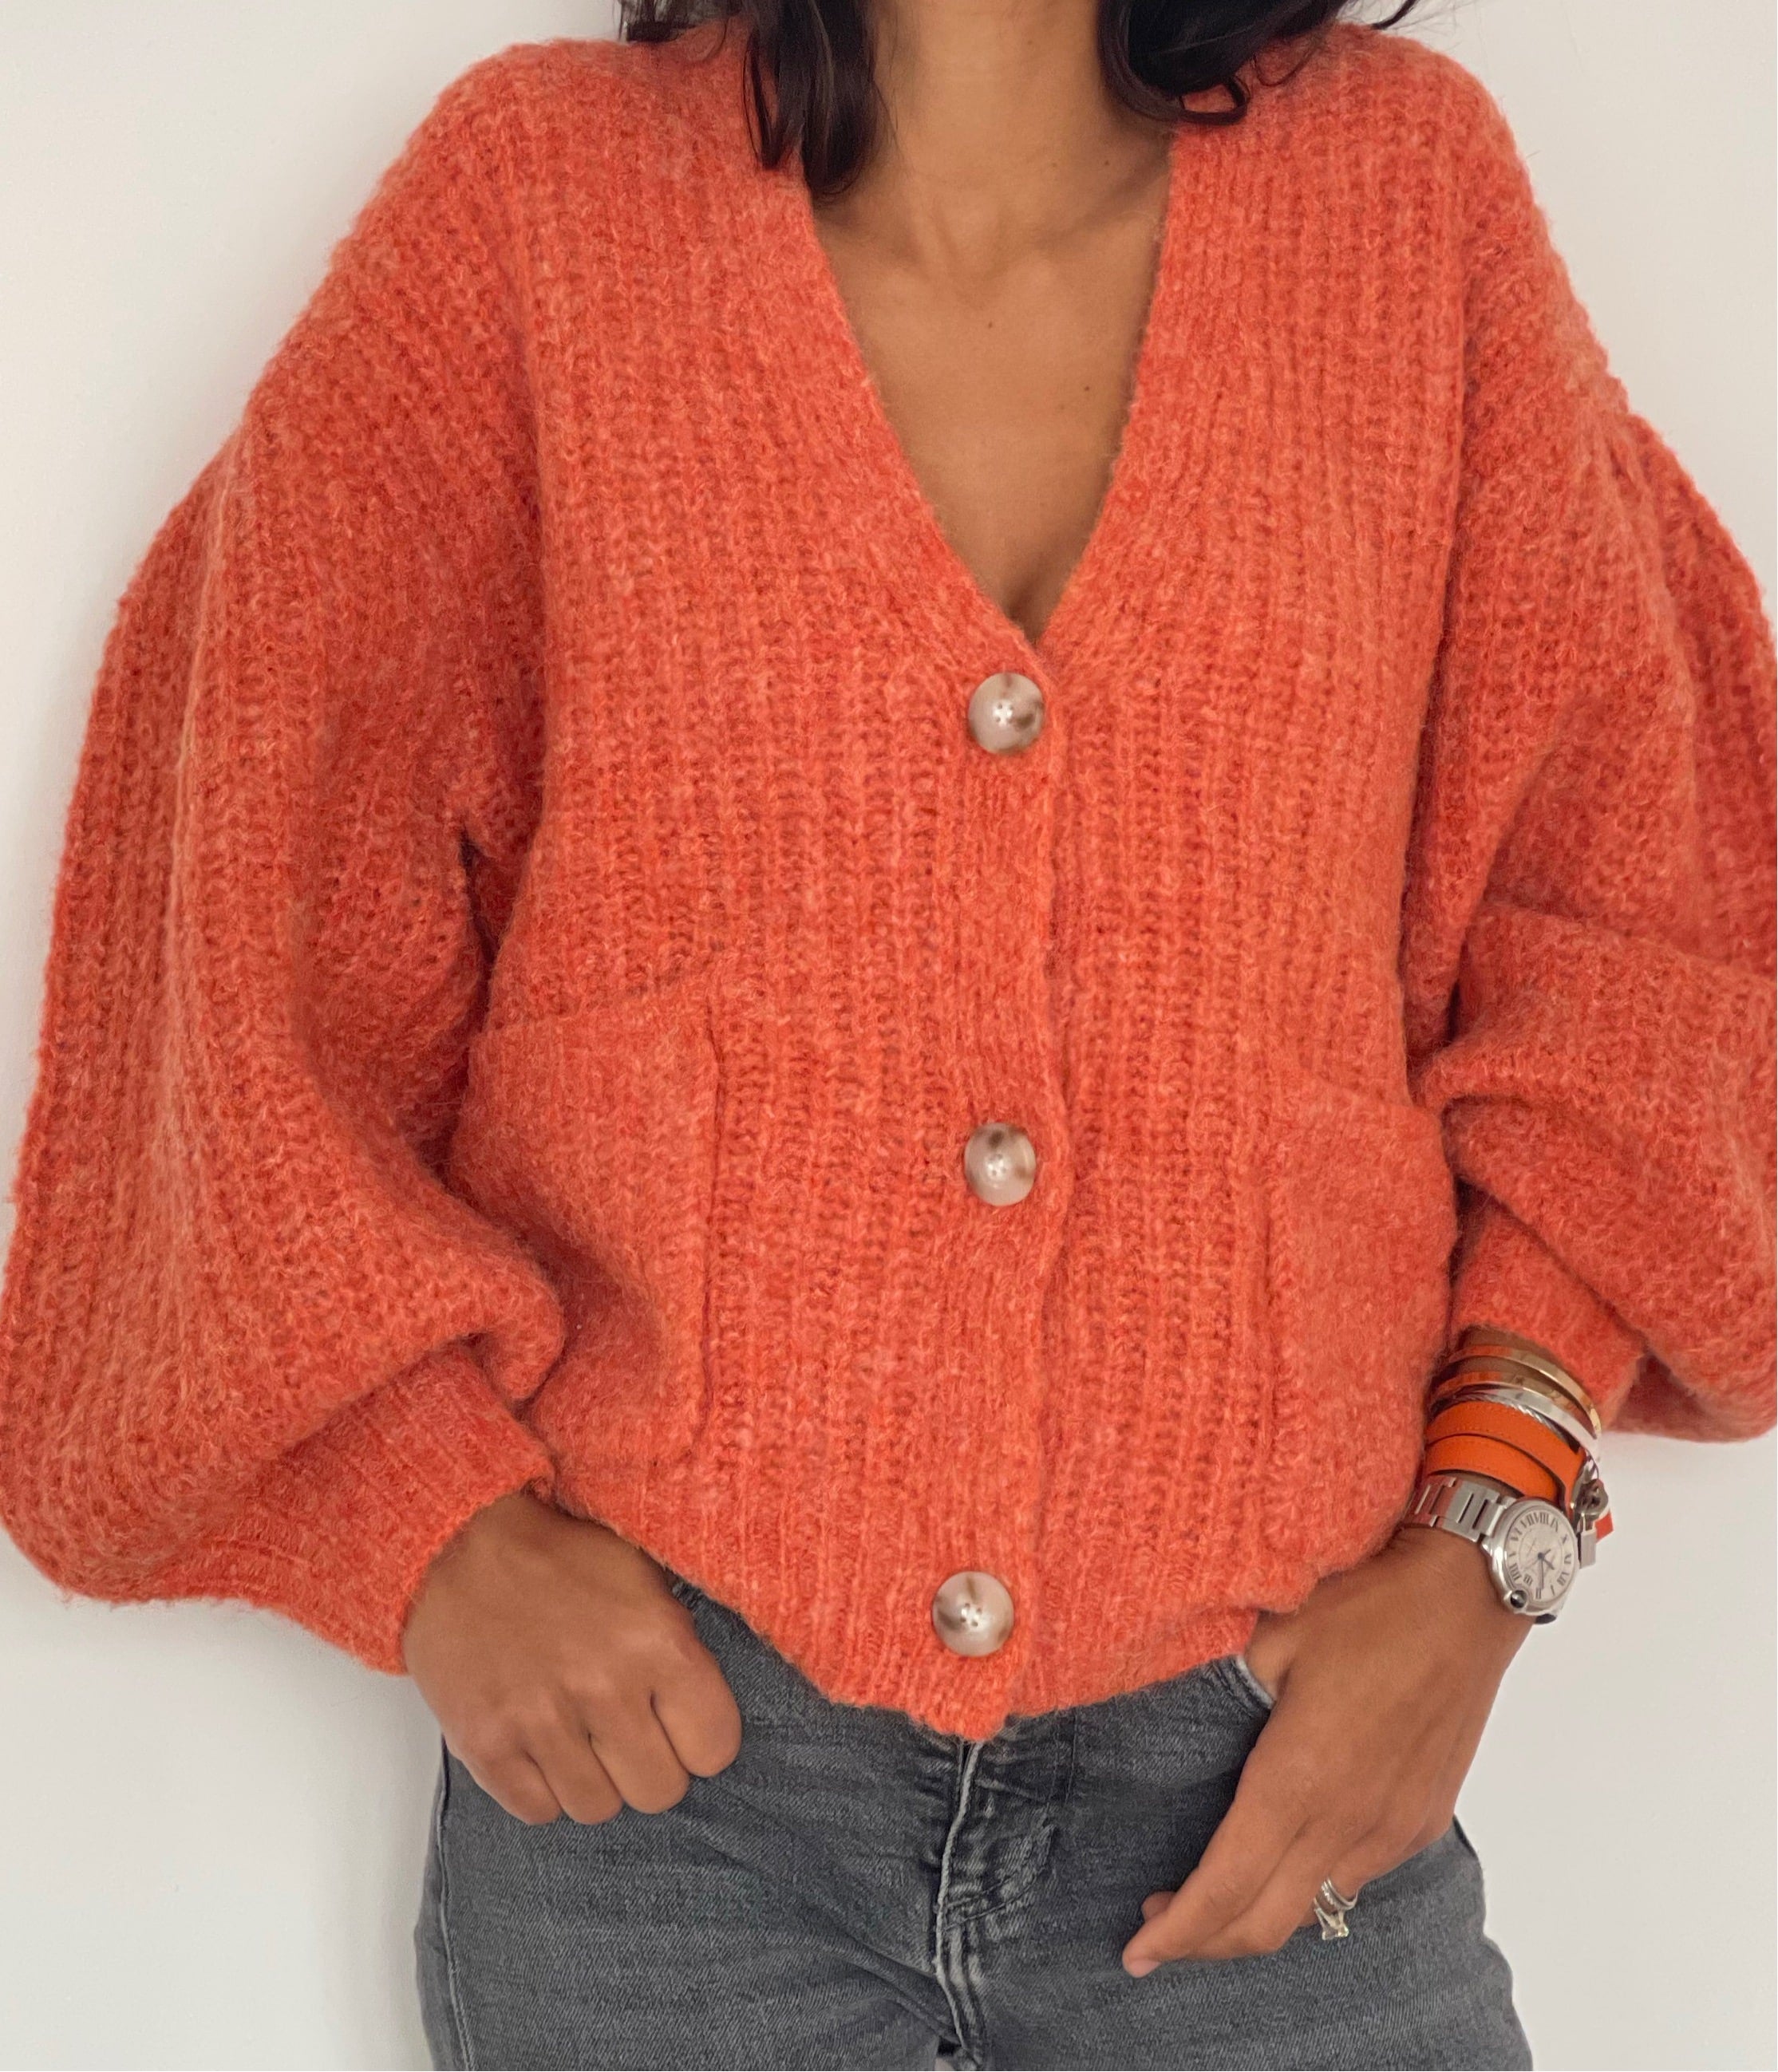 Gilet tricoté orange lumineux avec boutons